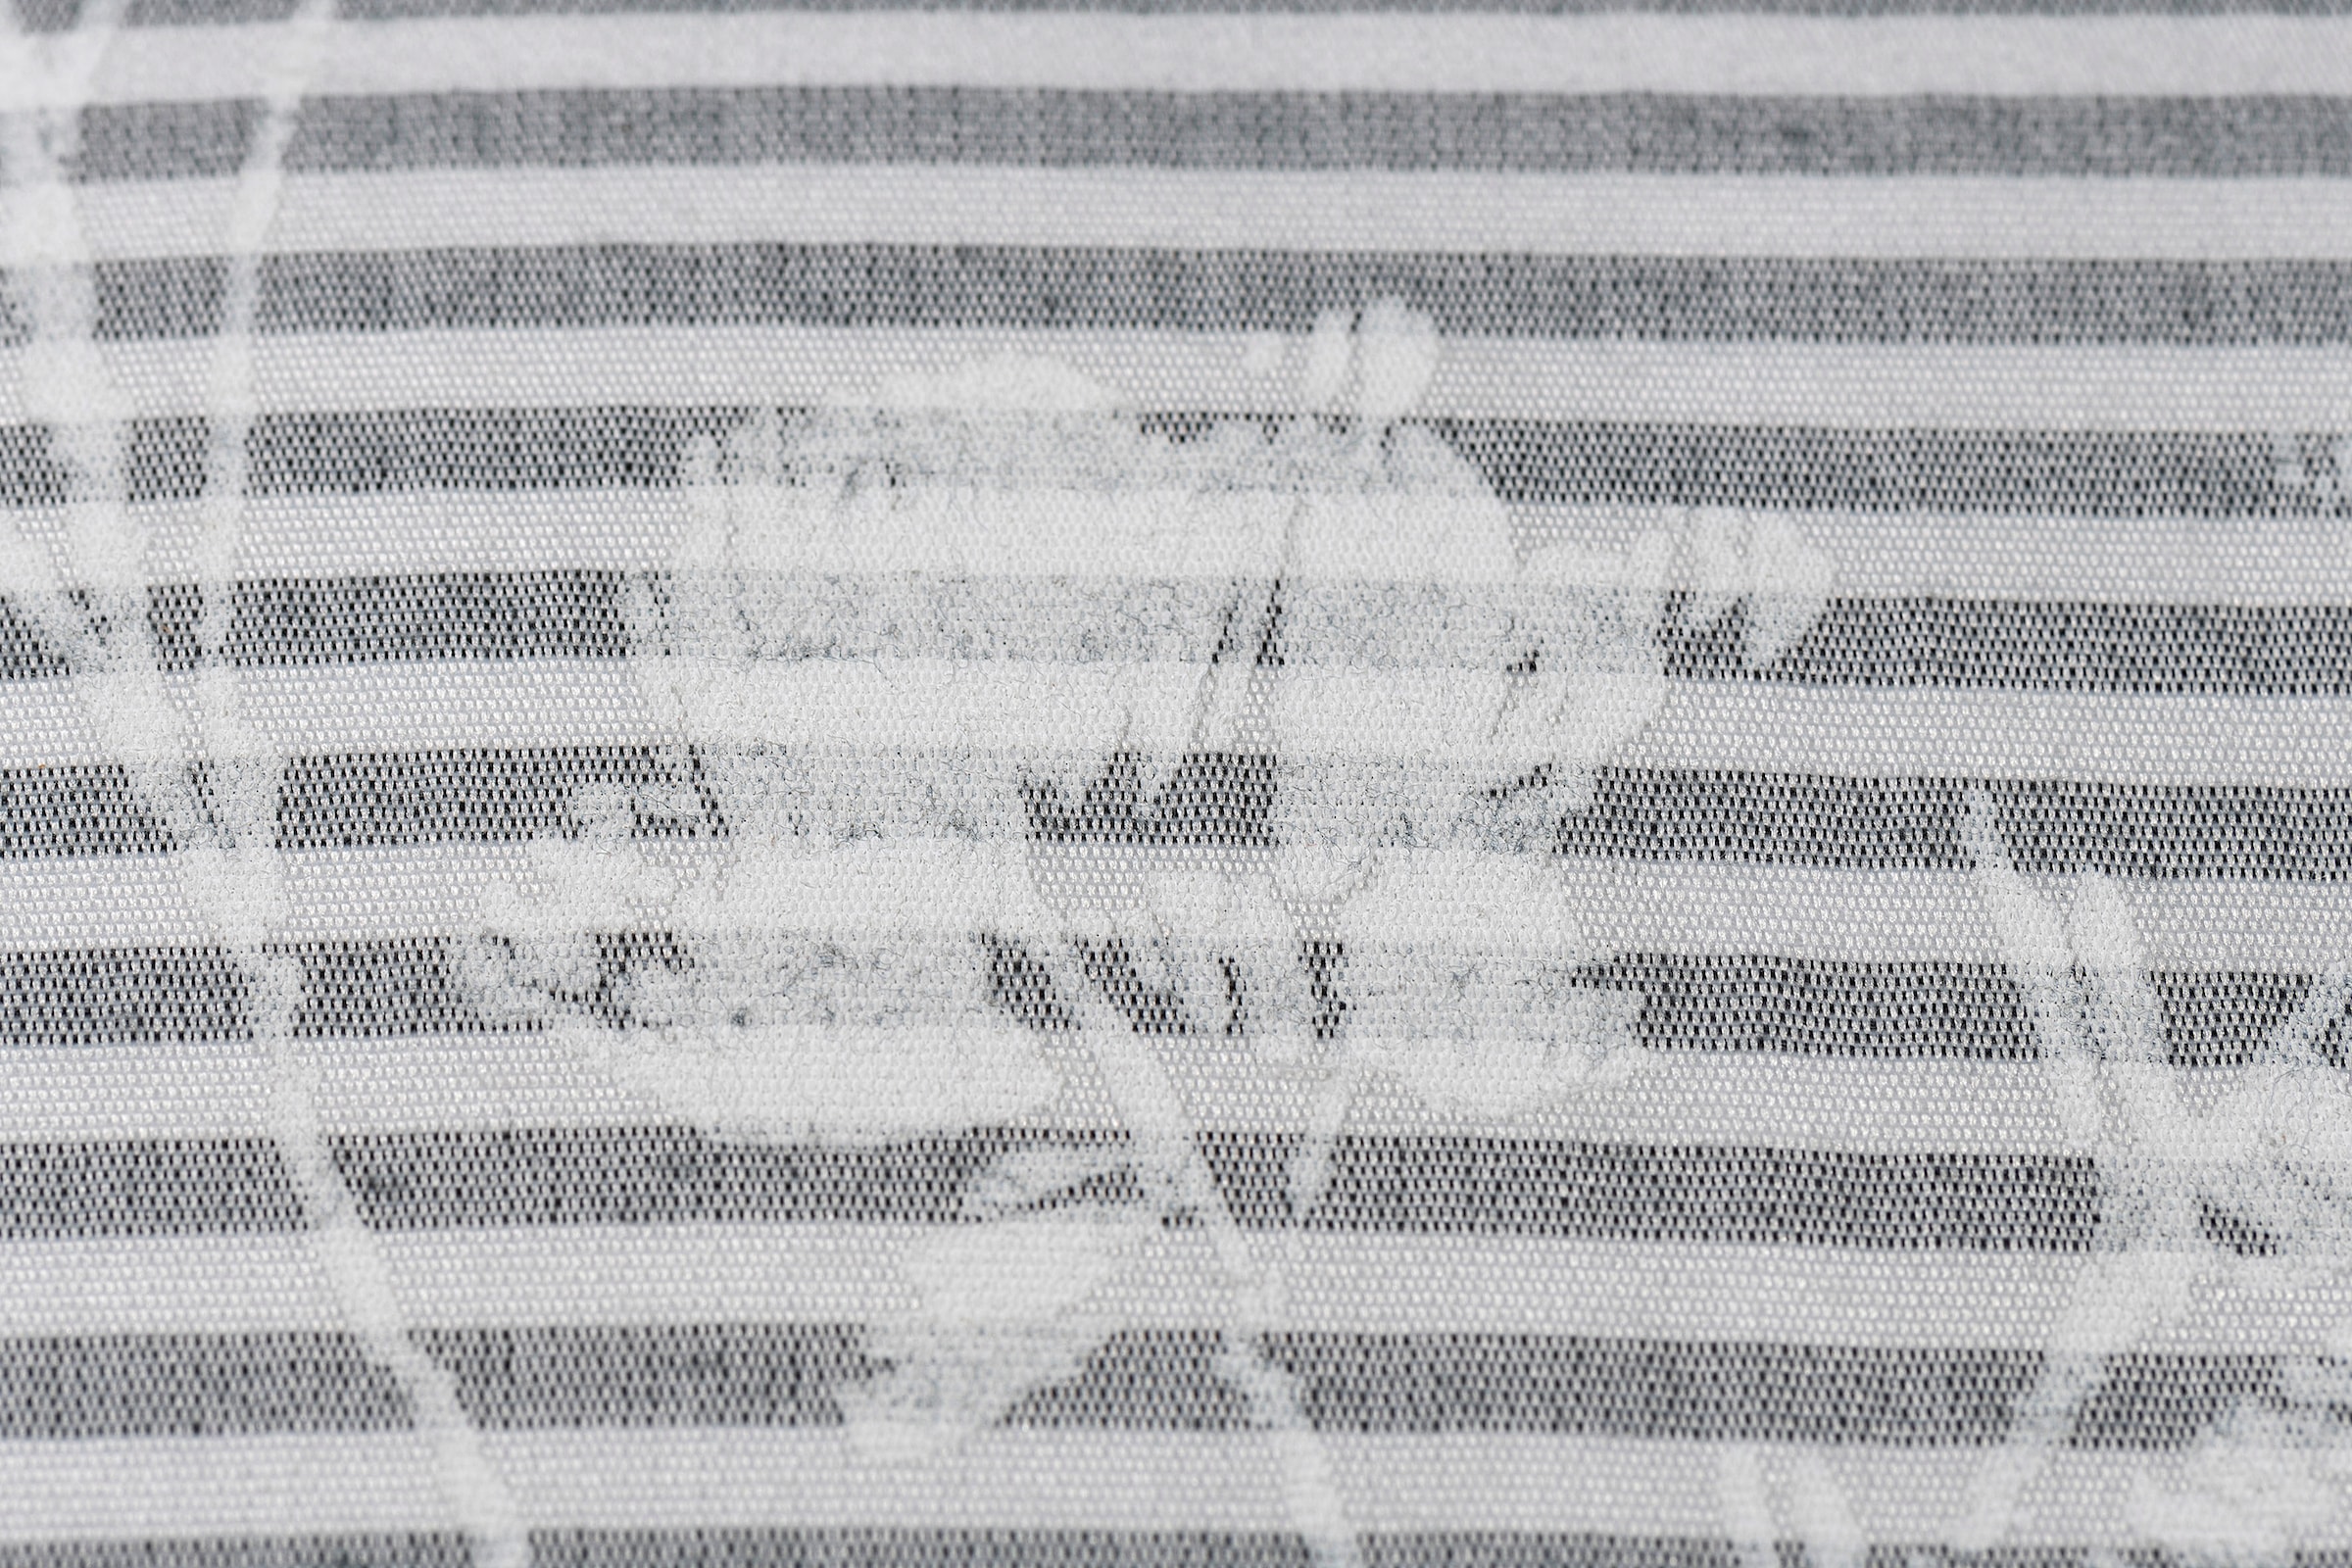 ELBERSDRUCKE Dekokissen »Blomma 07 weiss-grau«, Kissenhülle mit Polyesterfüllung im stilvollen Blumenprint, 45x45cm